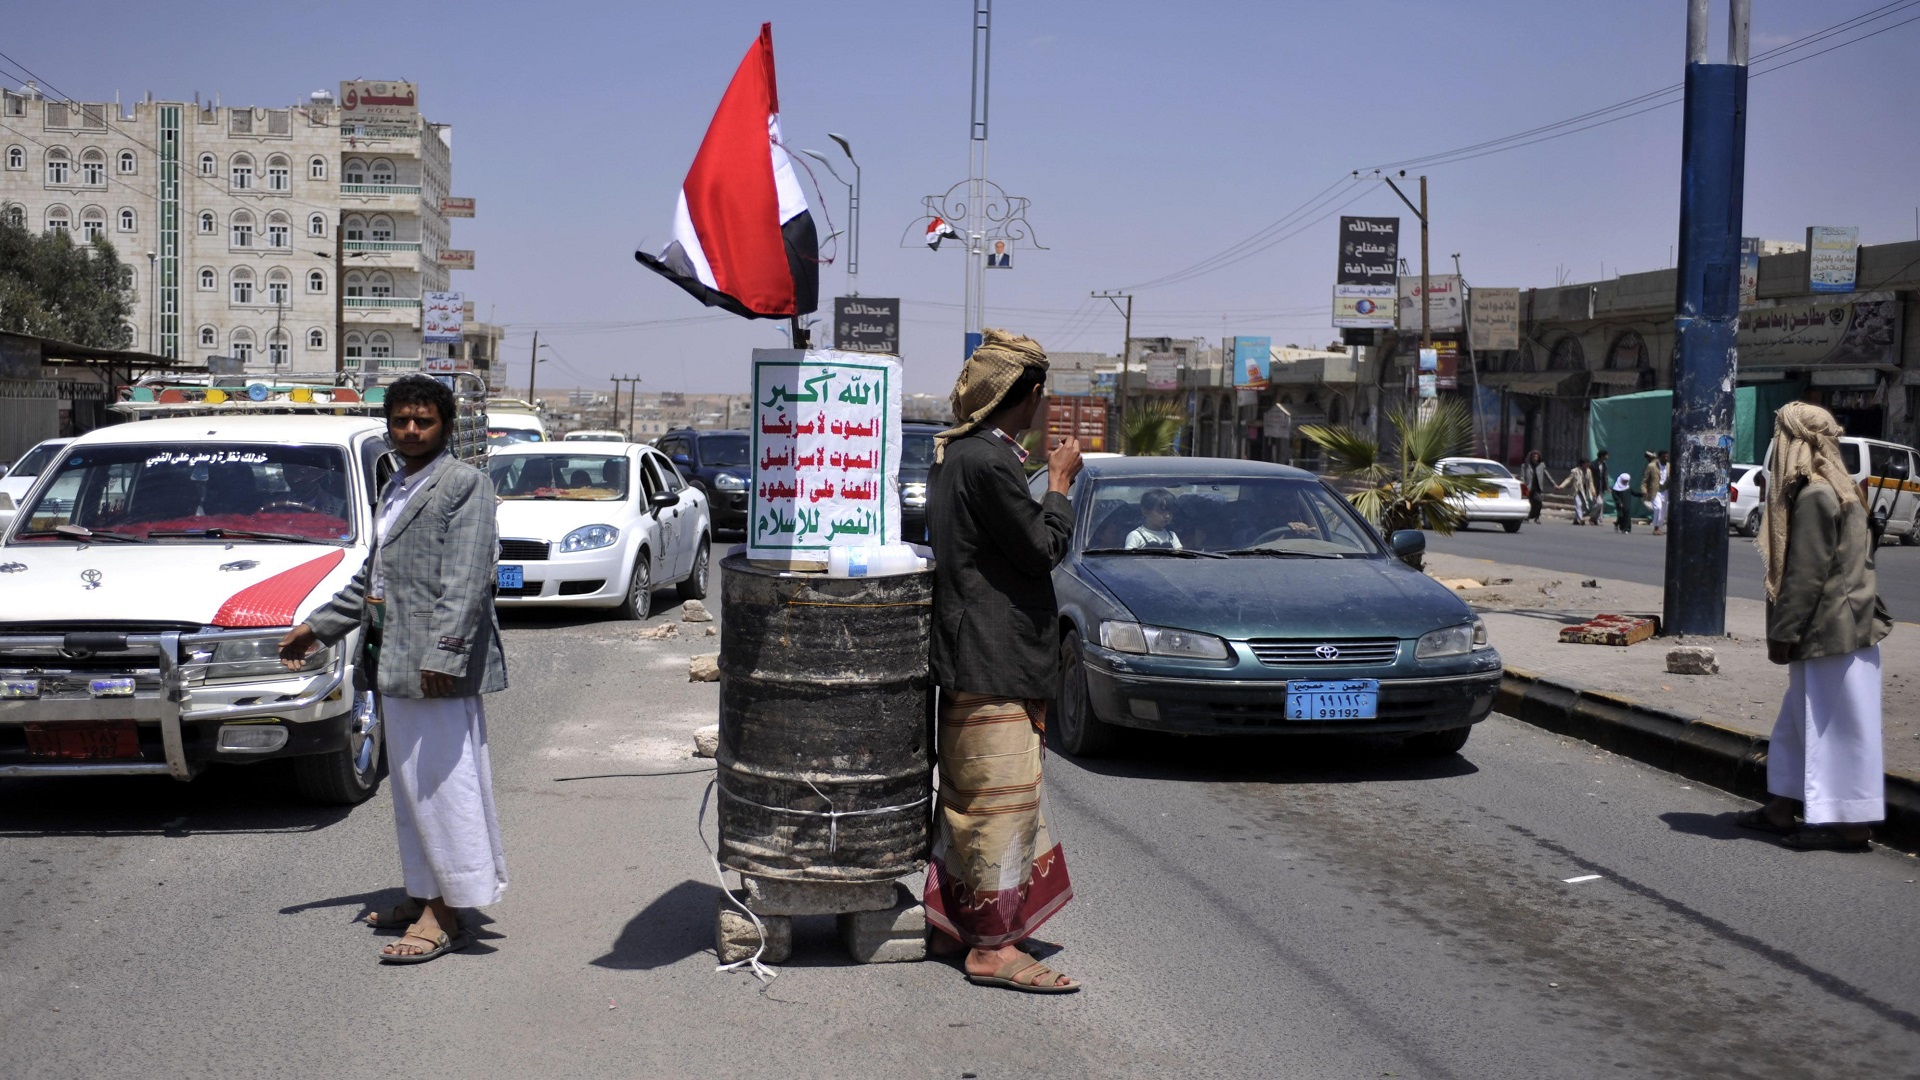 اليمن: نقاط الموت (تقرير حقوقي يرصد الانتهاكات في نقاط التفتيش في اليمن )